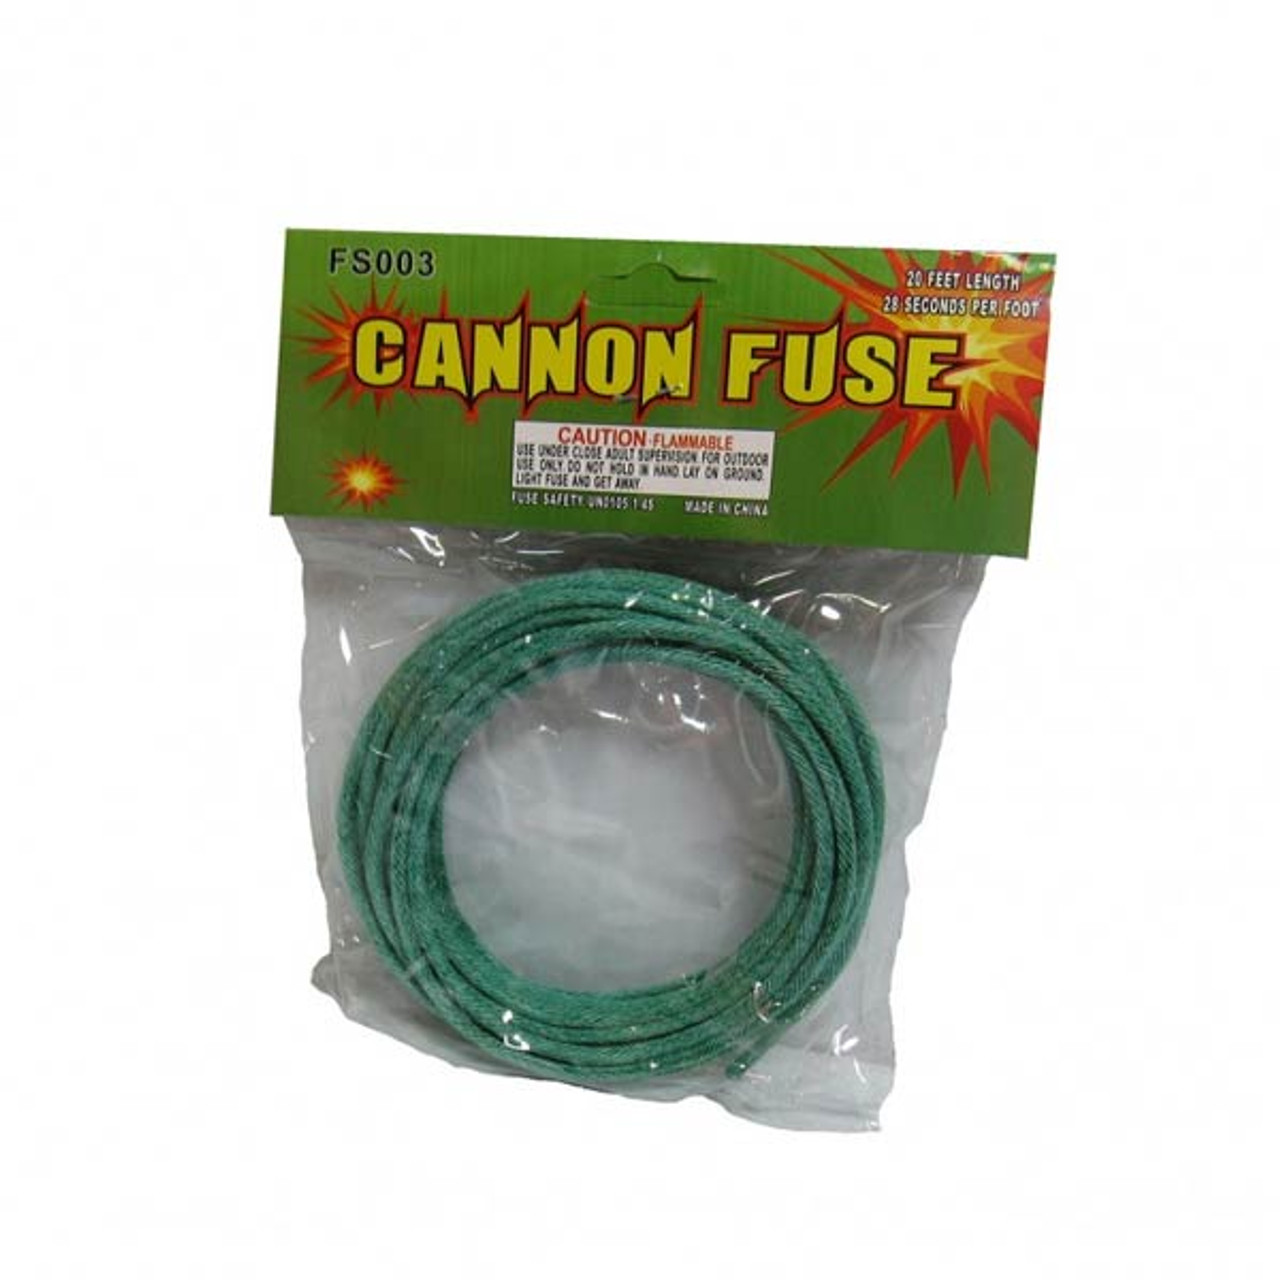 Cannon Fuse - Eagle Fireworks